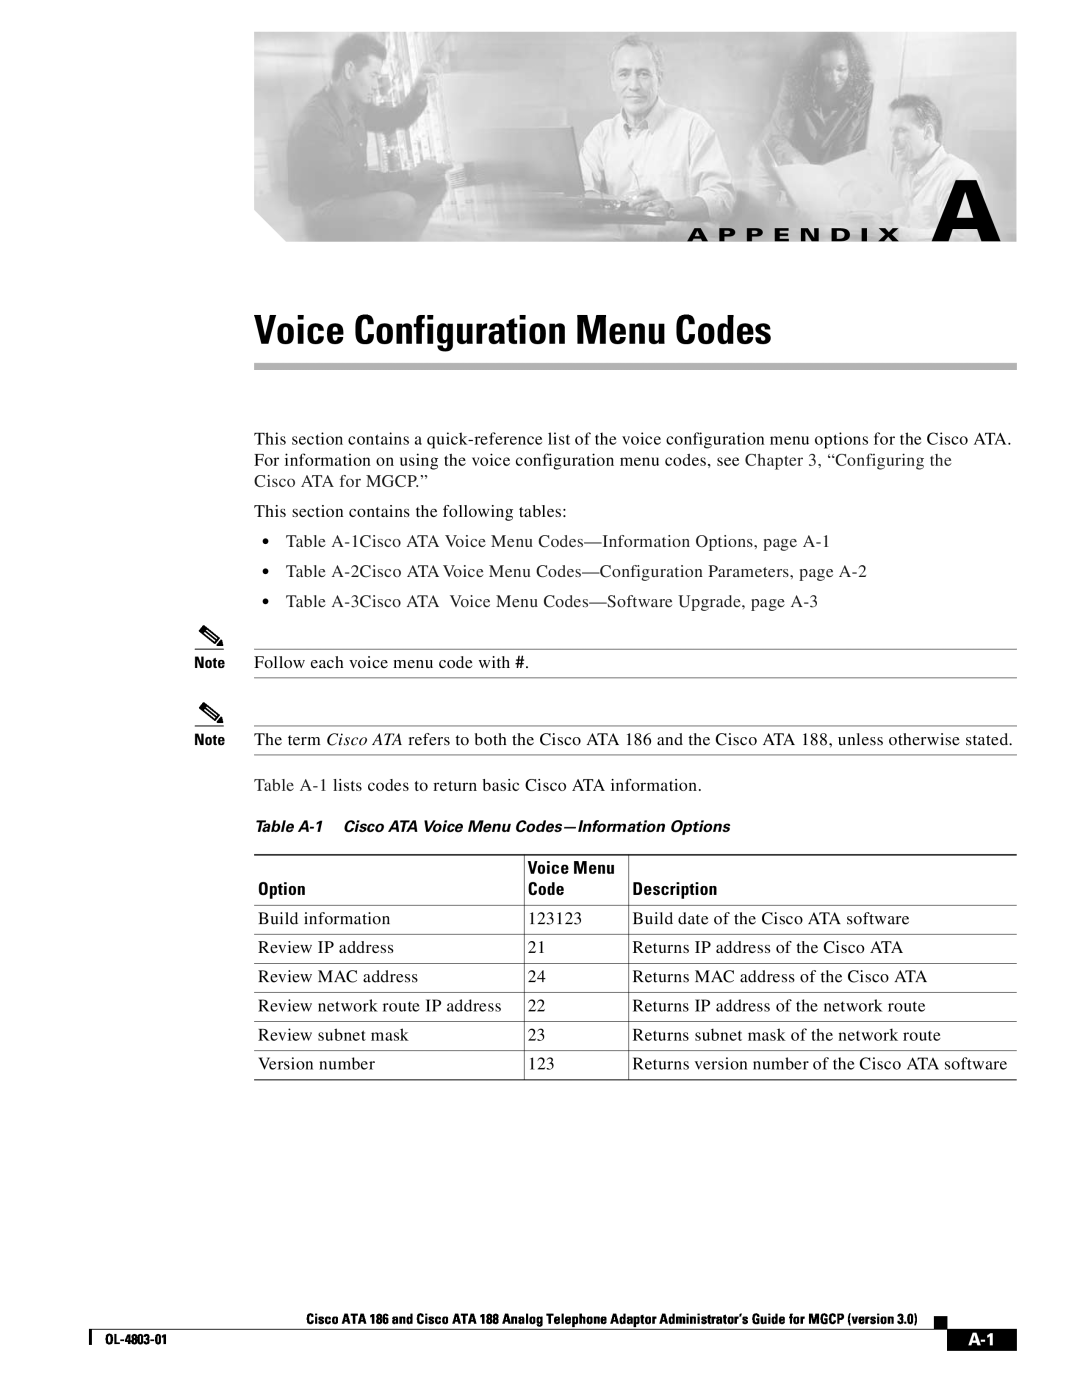 Cisco Systems ATA 188, ATA 186 manual Voice Configuration Menu Codes, A P P E N D I X A, Option, Voice Menu, Description 